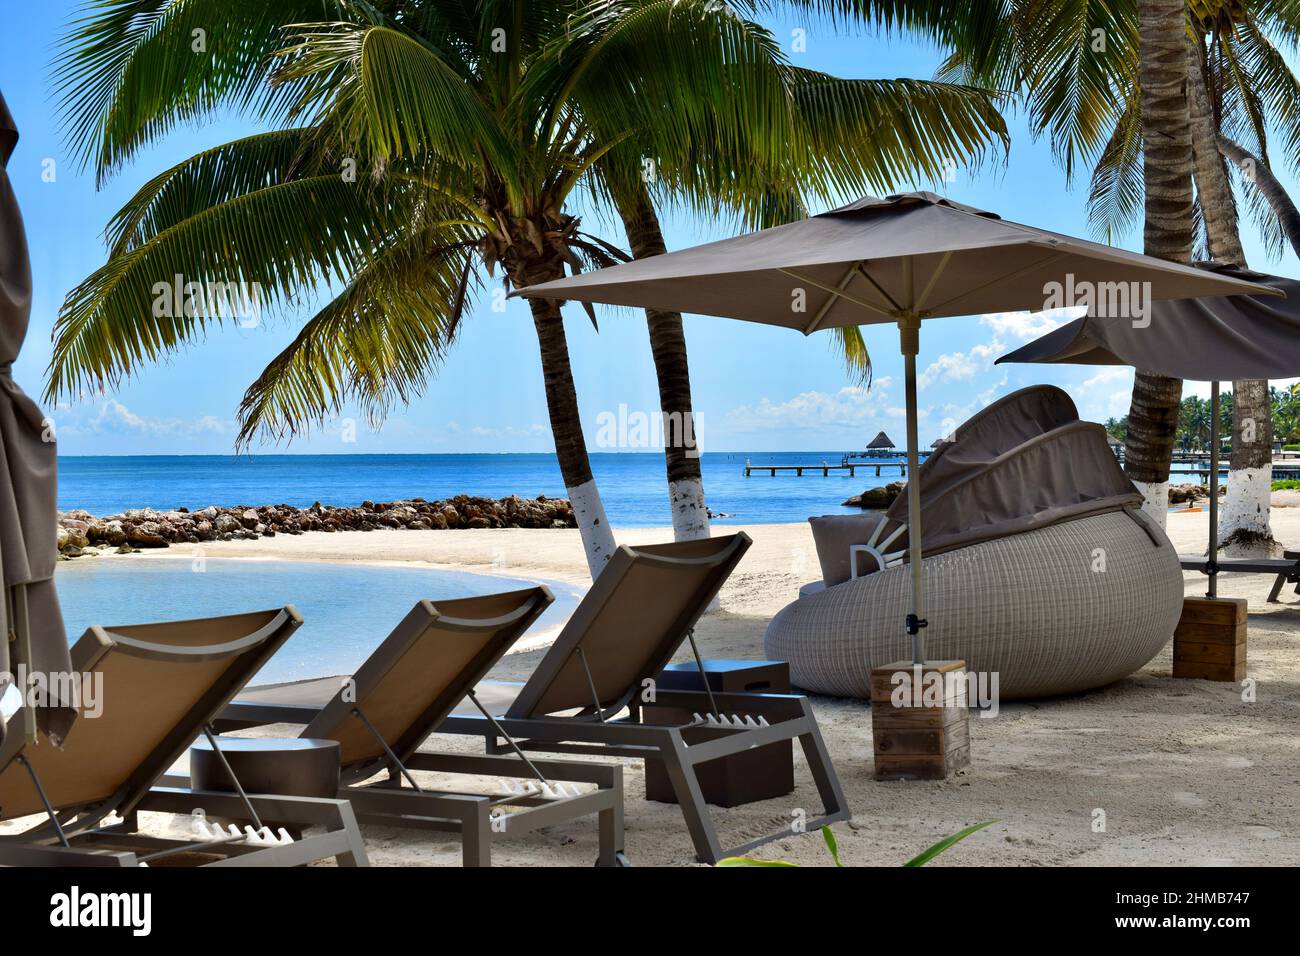 Sedie a sdraio e un divano letto rotondo con baldacchino sulla spiaggia di San Pedro, Belize in una giornata luminosa e soleggiata. Foto Stock